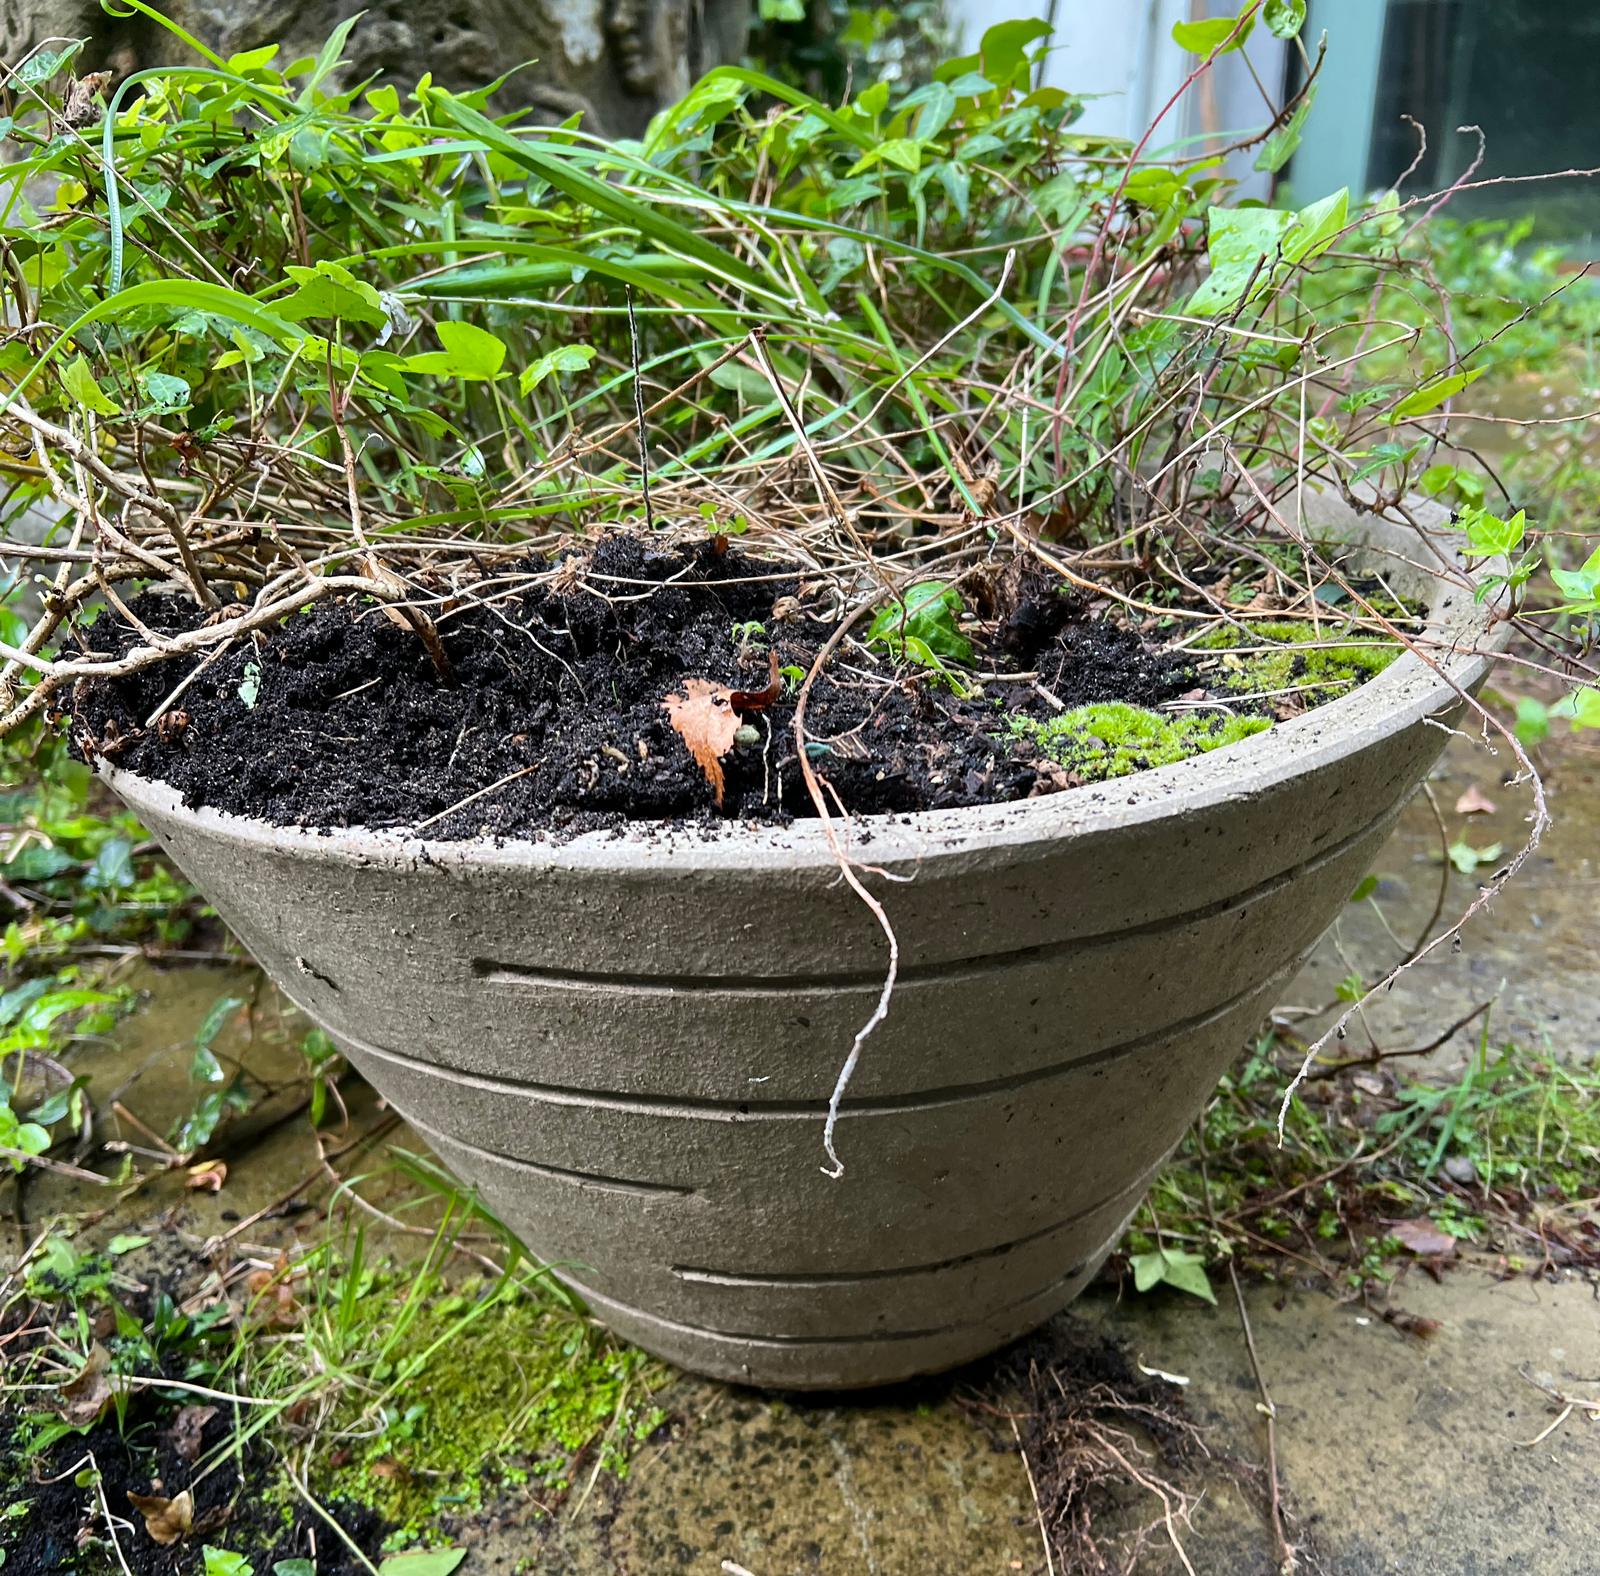 A contemporary conical shaped garden pot